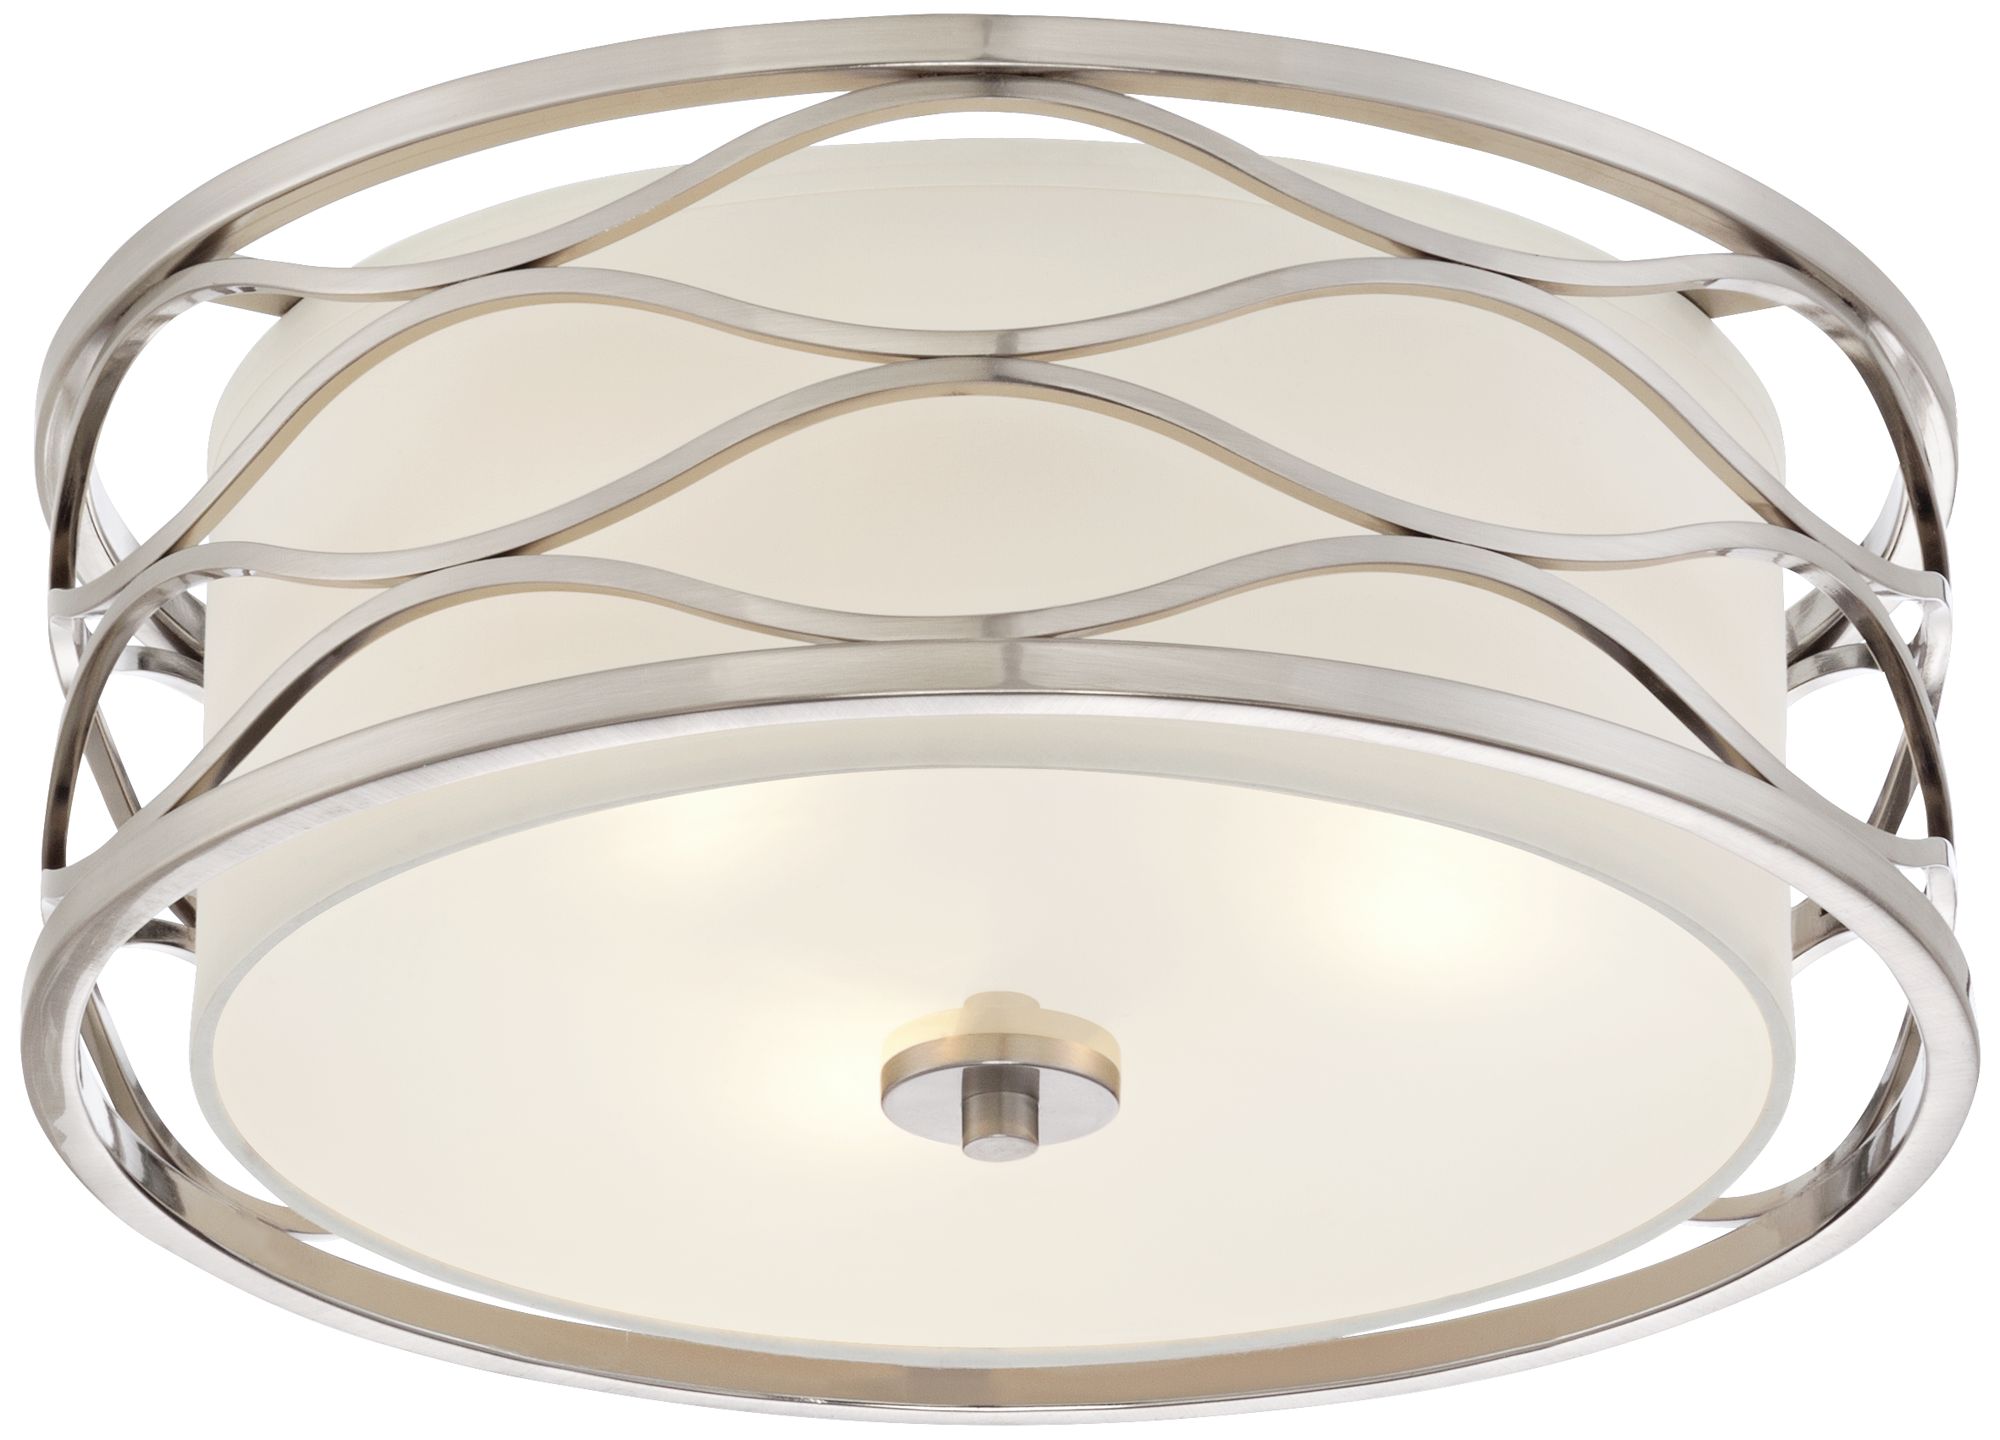 Epiphany Lighting 3-Light Flush Mount 16" Brushed Nickel Round Ceiling Fixture 